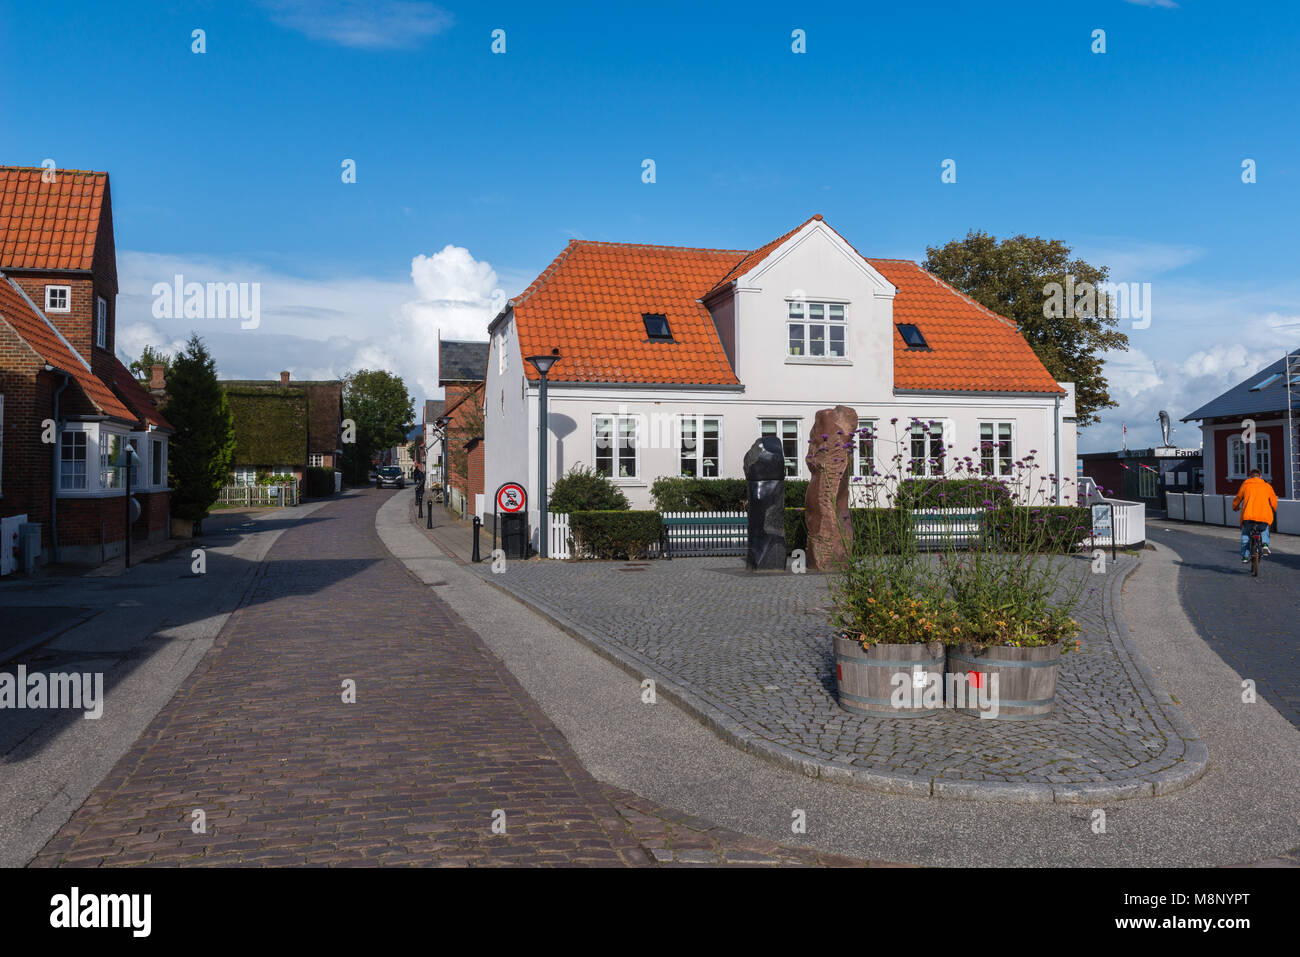 Ciottoli stone street attraverso il centro della città, tipiche case danese in Nordby, isola di Fanoe, nello Jutland, Danimarca e Scandinavia Foto Stock